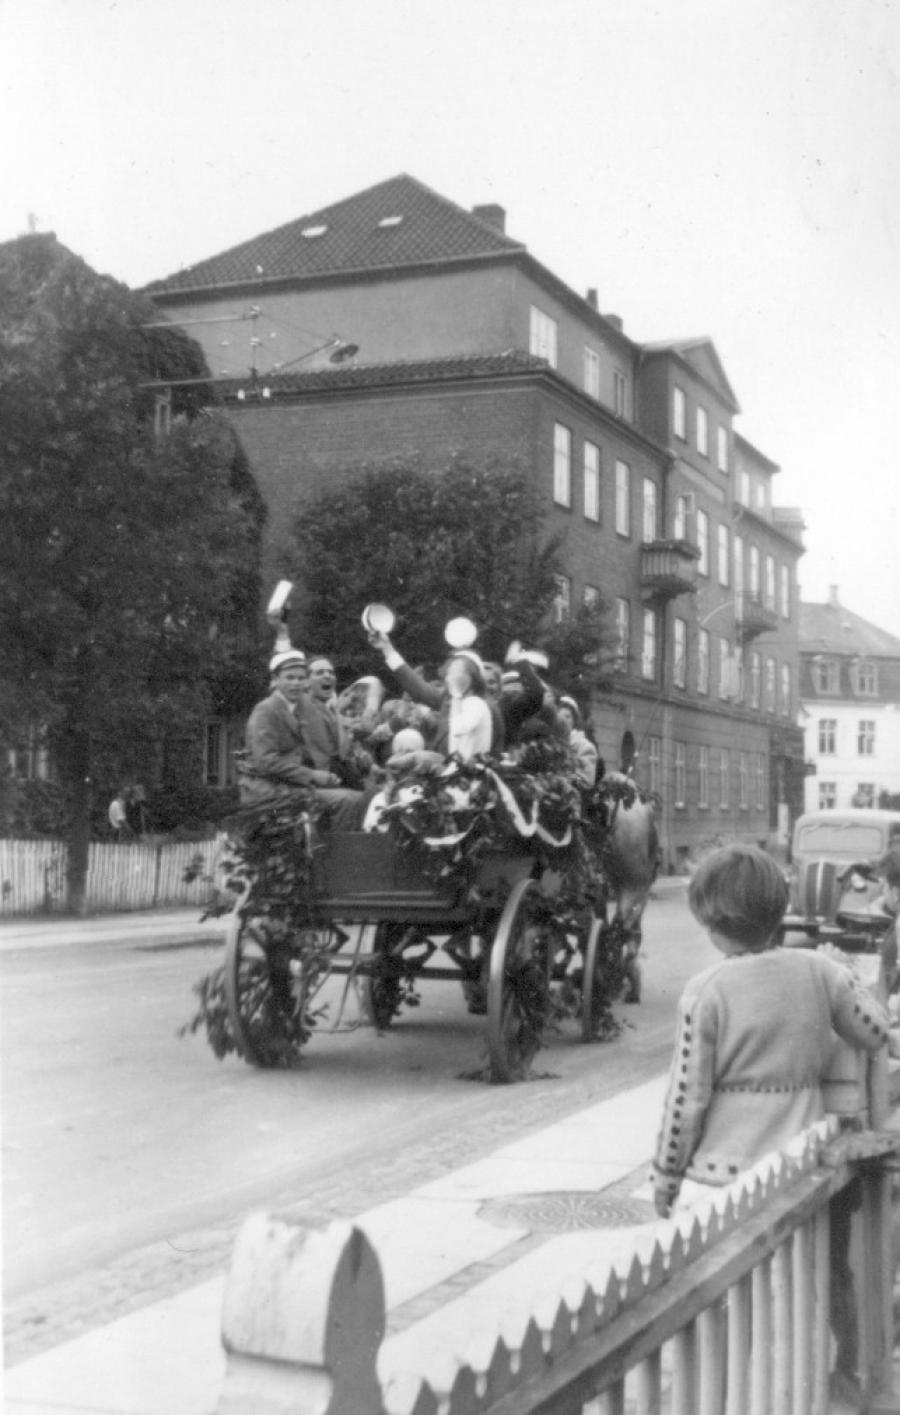 Årgang 1953 fejrer deres eksamen med paradekørsel gennem Hillerød, bl.a. Milnersvej. 